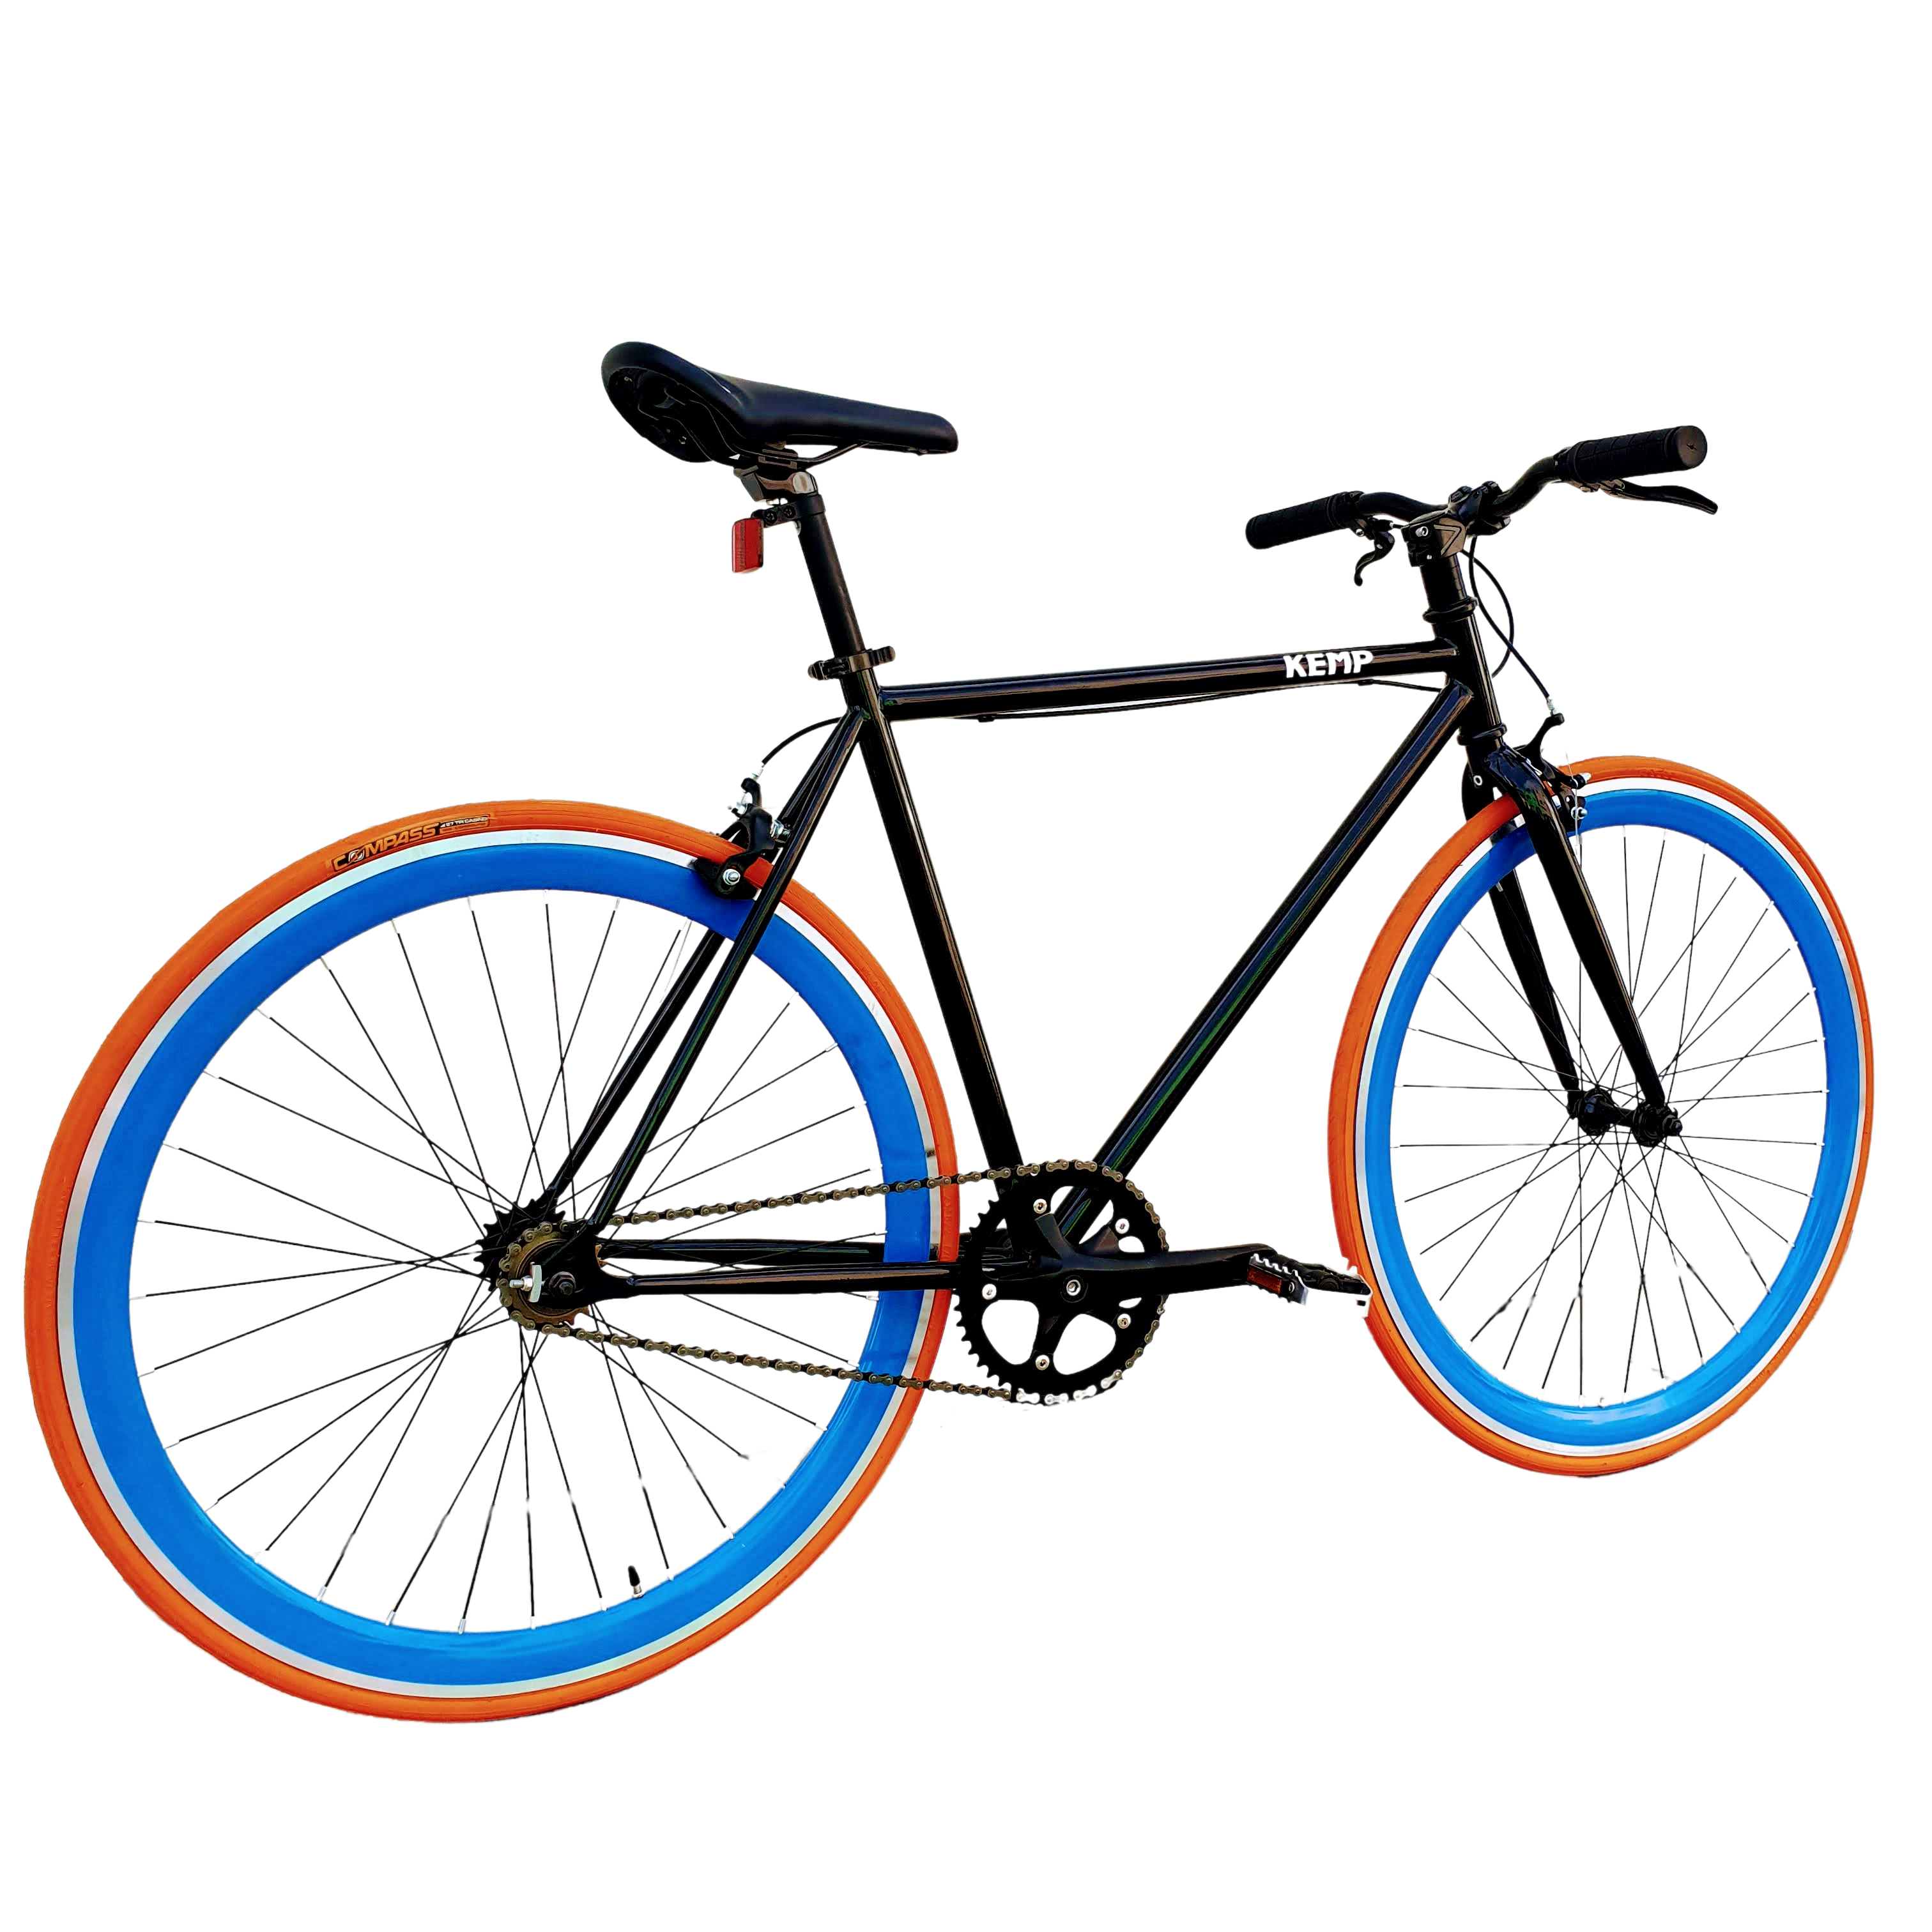 SNG Par Zapatas Freno Fixie Clasico Bicicleta Carretera Colores - €4.99 :  , Recambios y Componentes de Bicicleta, Taller, Montaje,  Ensamblado y Reparaciones Bicicletas